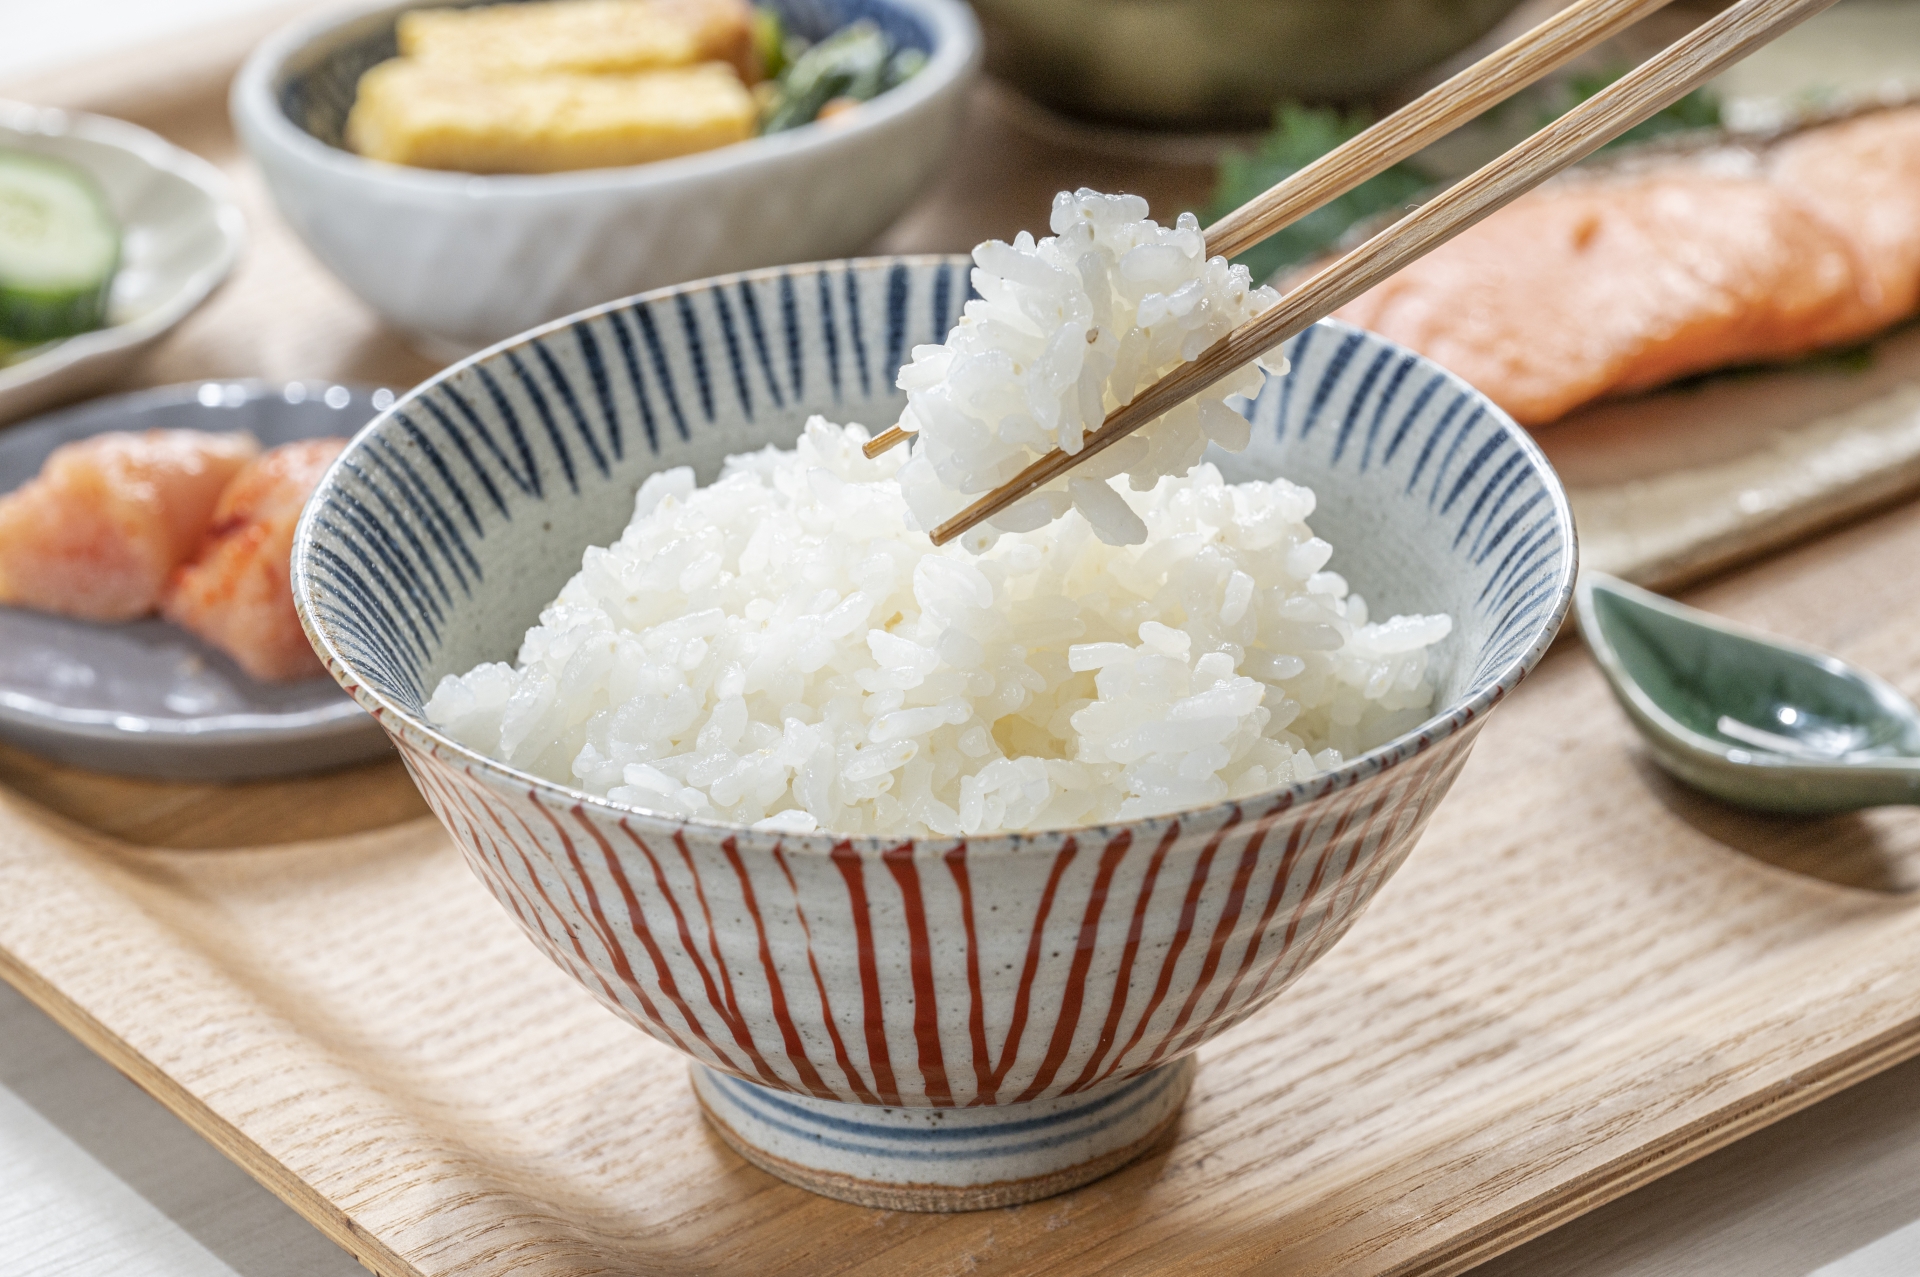 Người Nhật ăn cơm để kéo dài tuổi thọ, bí quyết nằm ở 4 thói quen đơn giản - Ảnh 1.